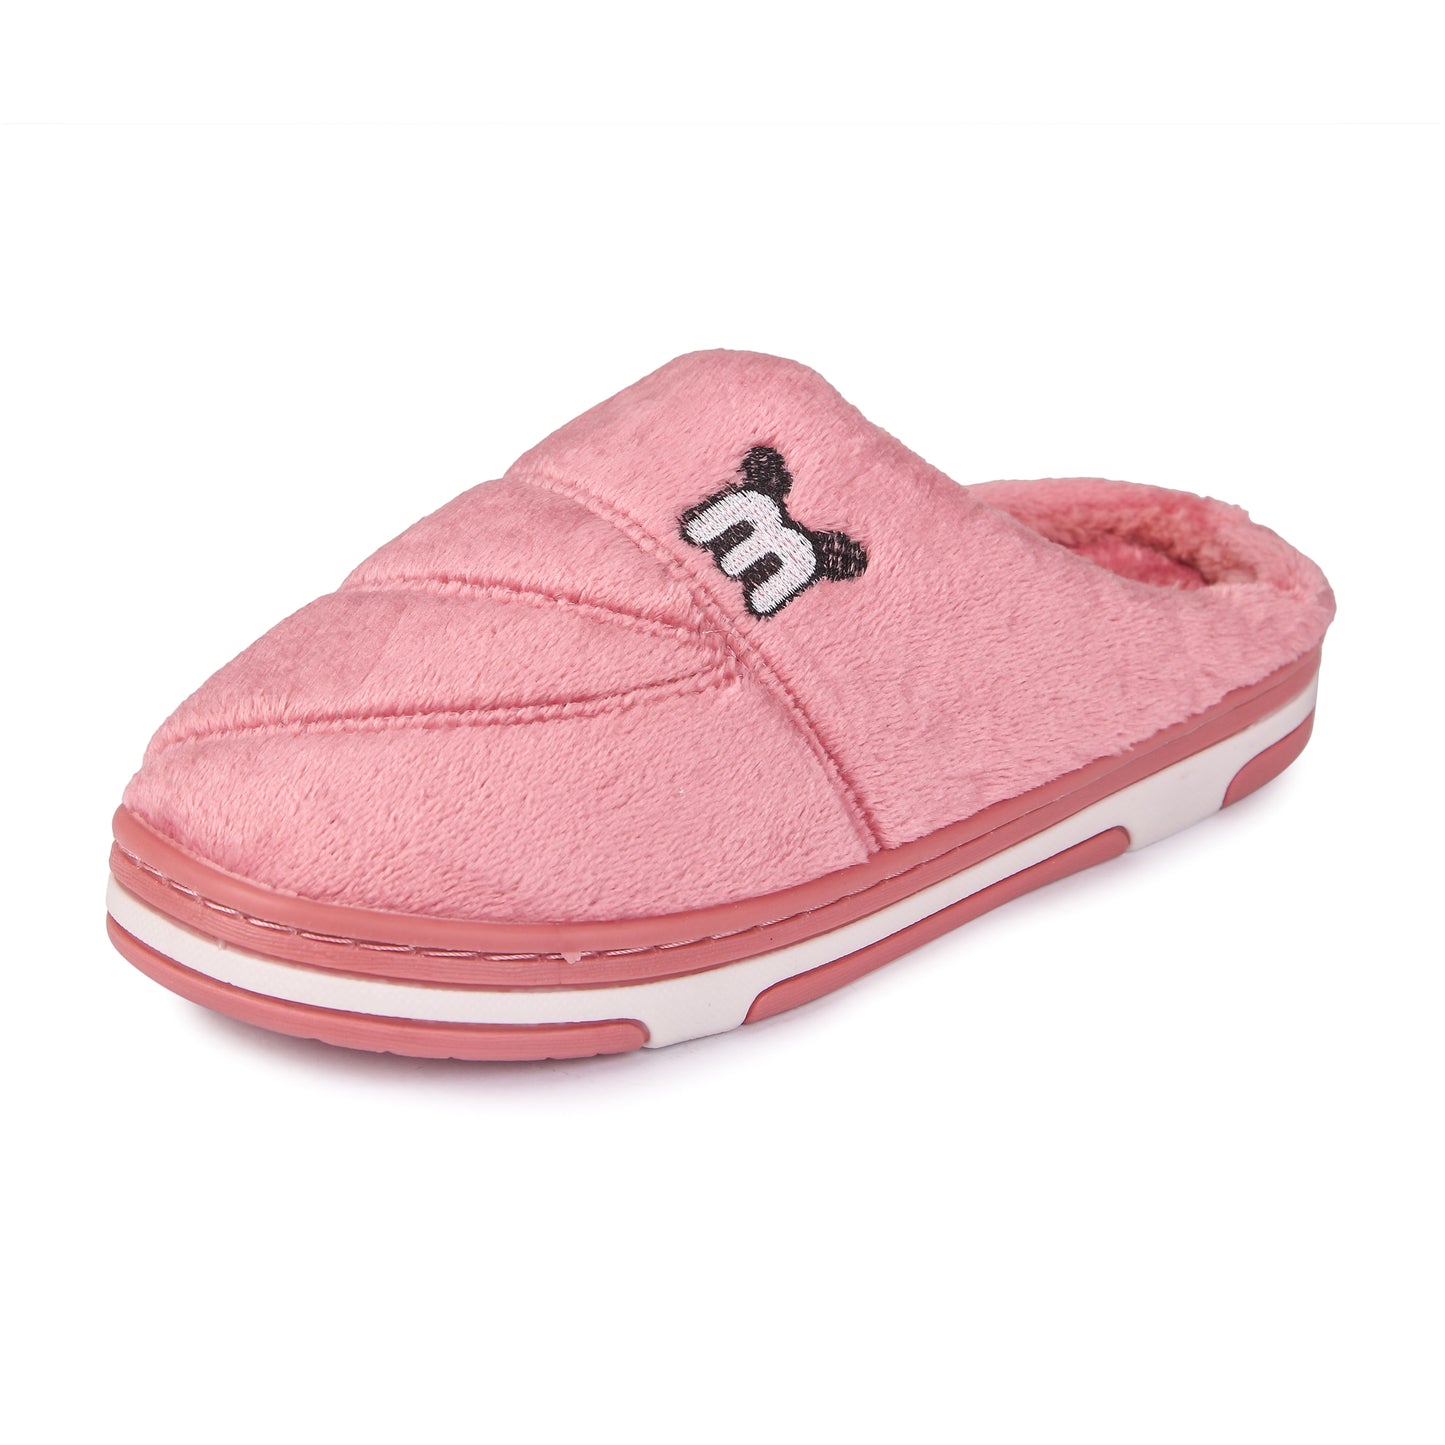 Brauch Women's Pink Cute Ear Warm Winter Slippers…